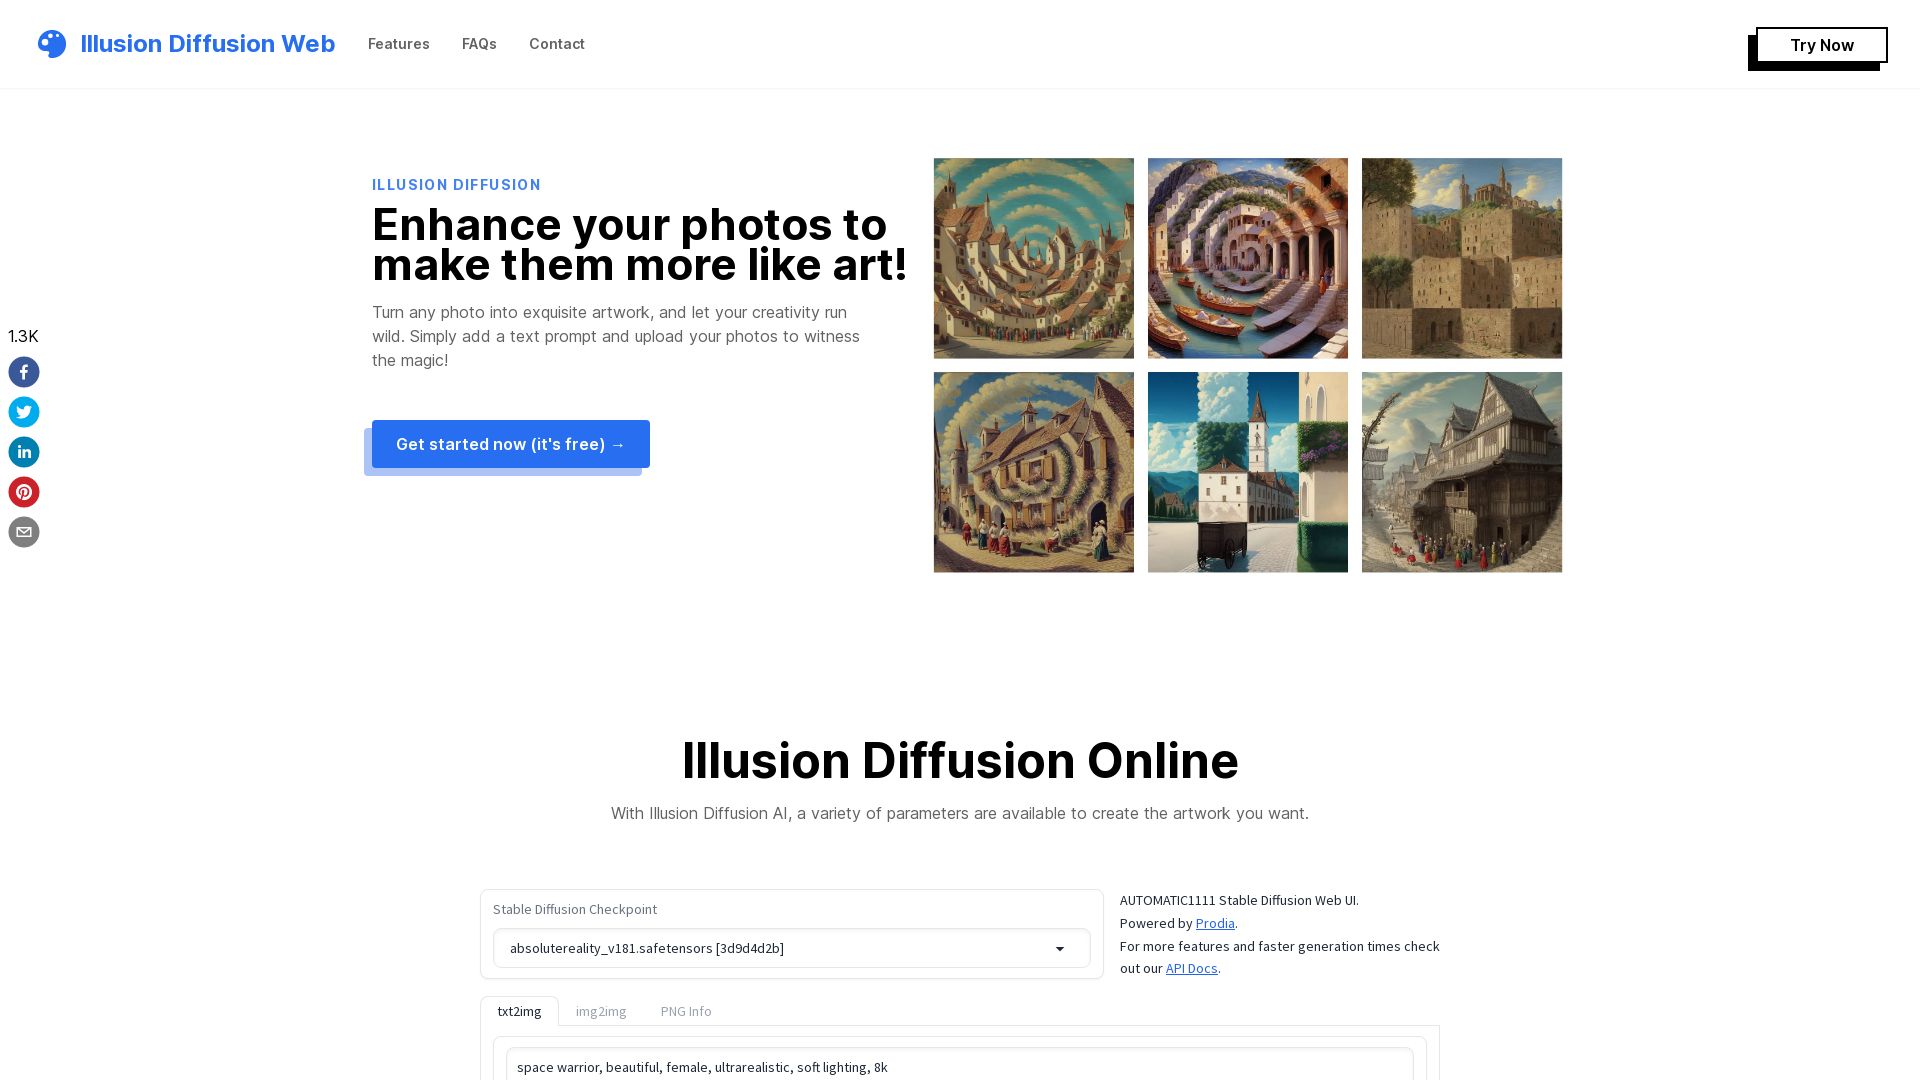 Illusion Diffusion: Free to Use AI - Illusion Diffusion Web